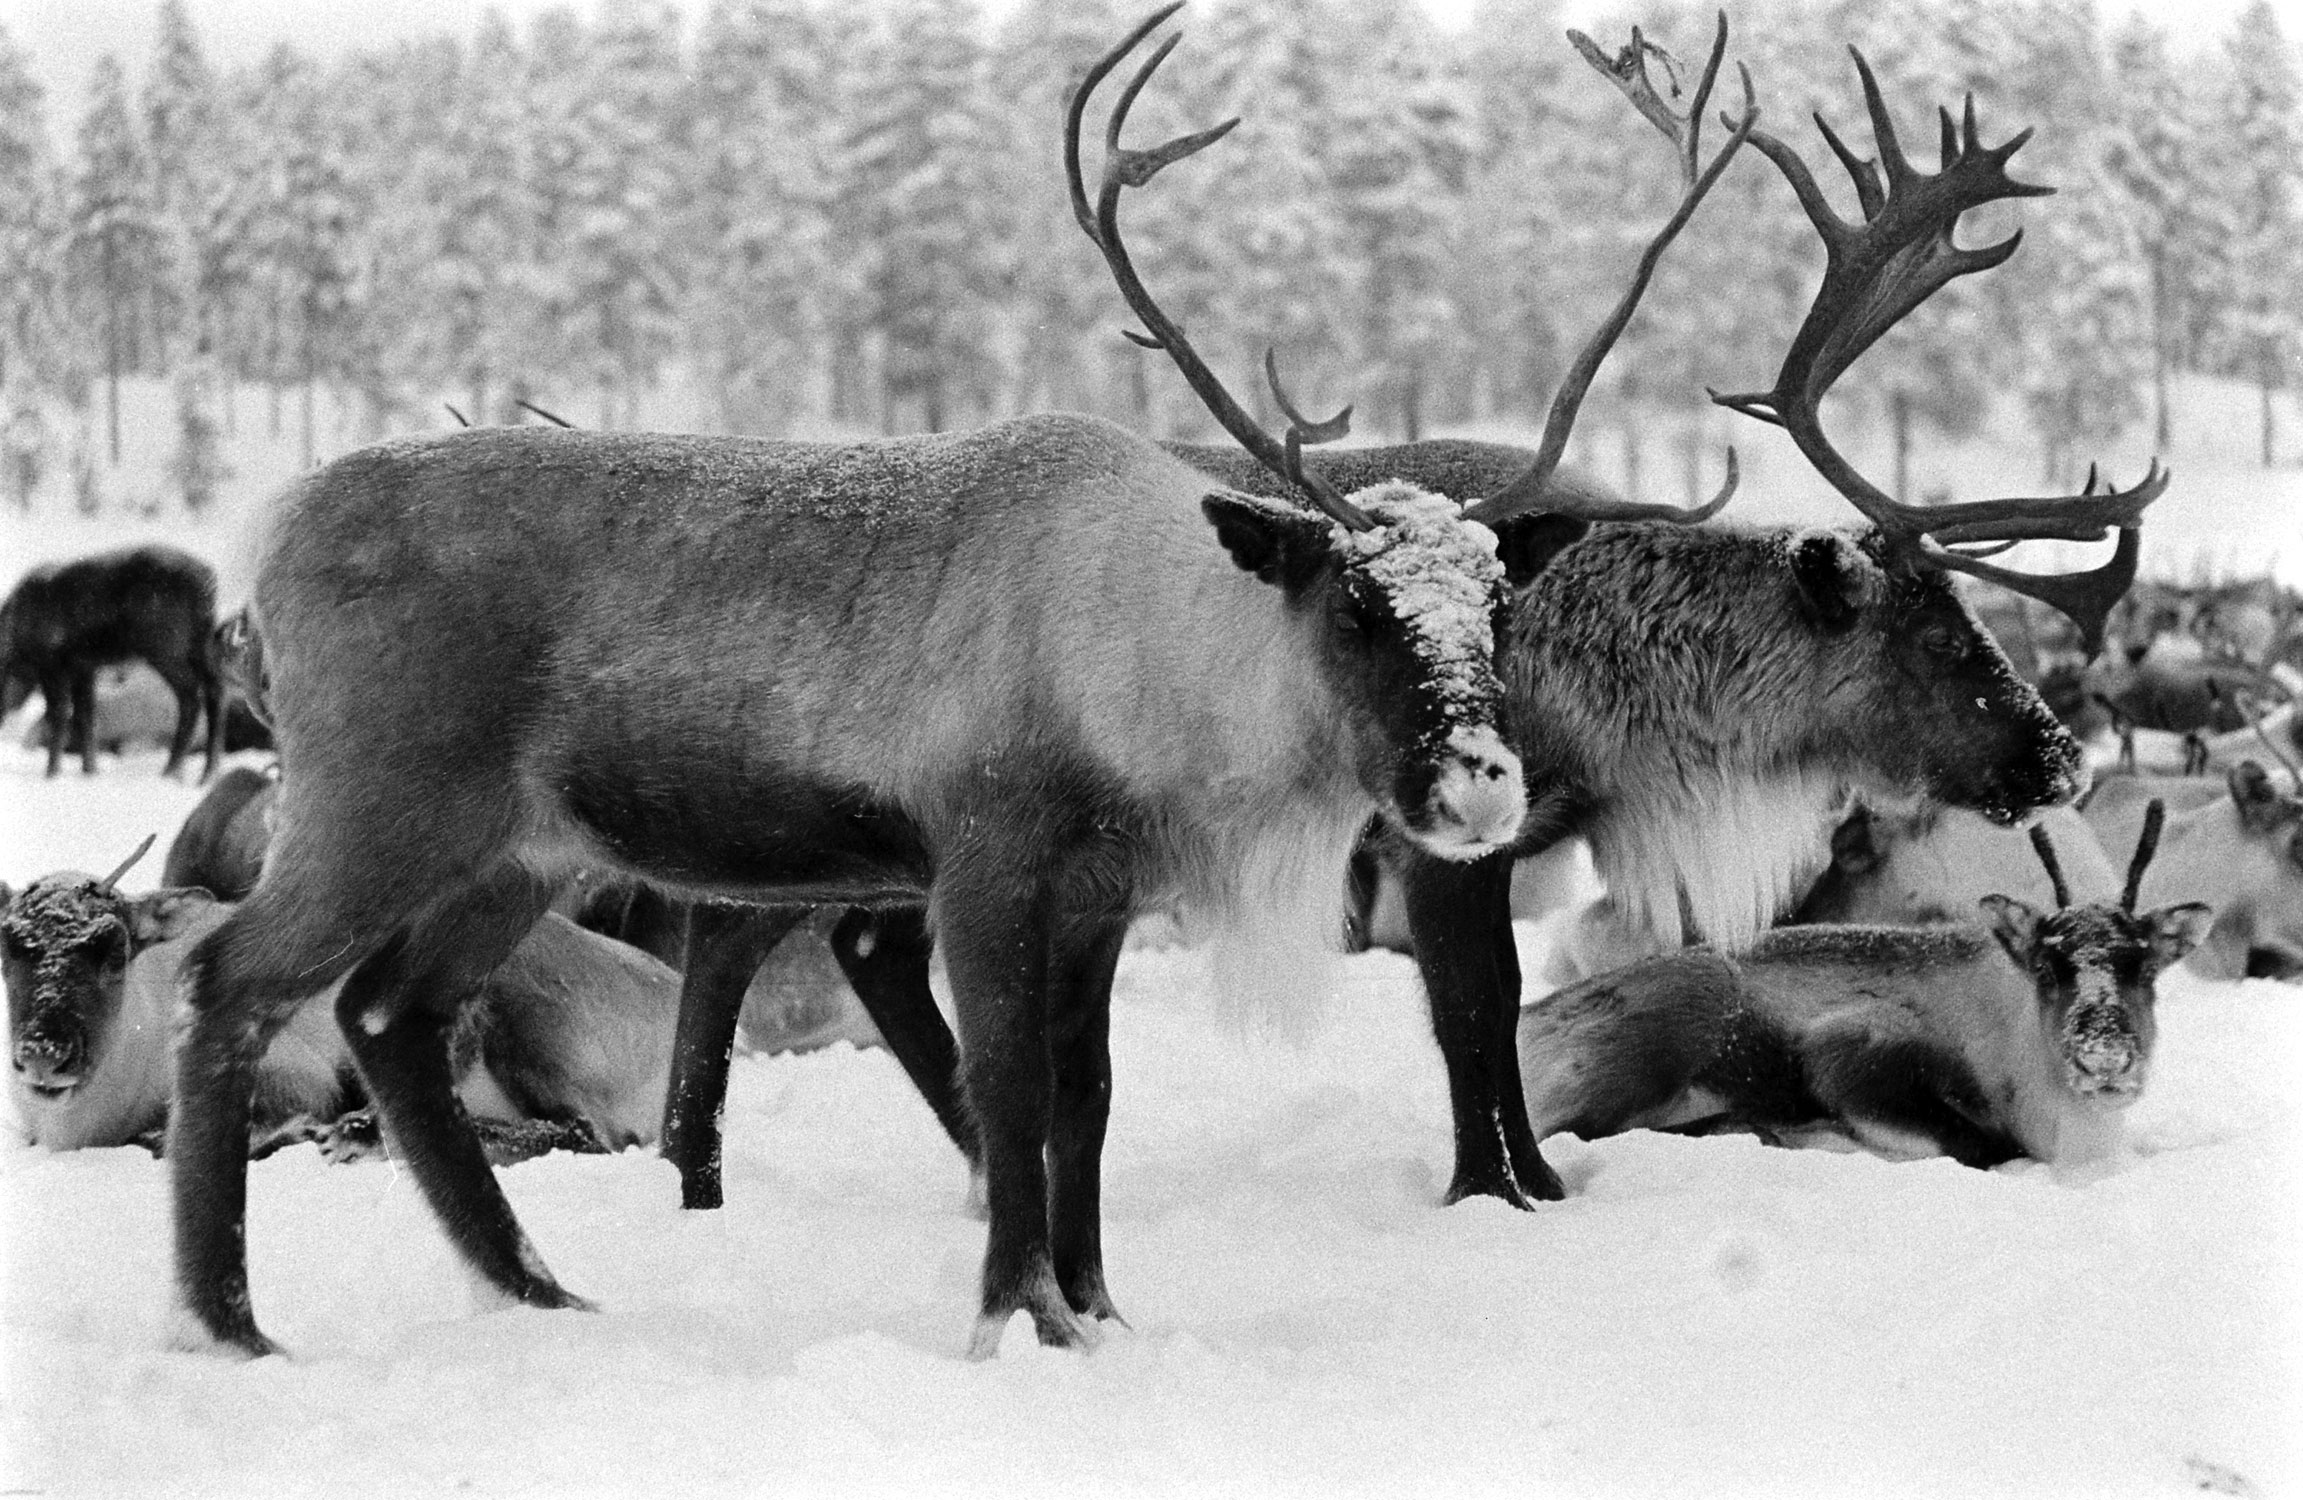 Reindeer, Sweden, 1955.